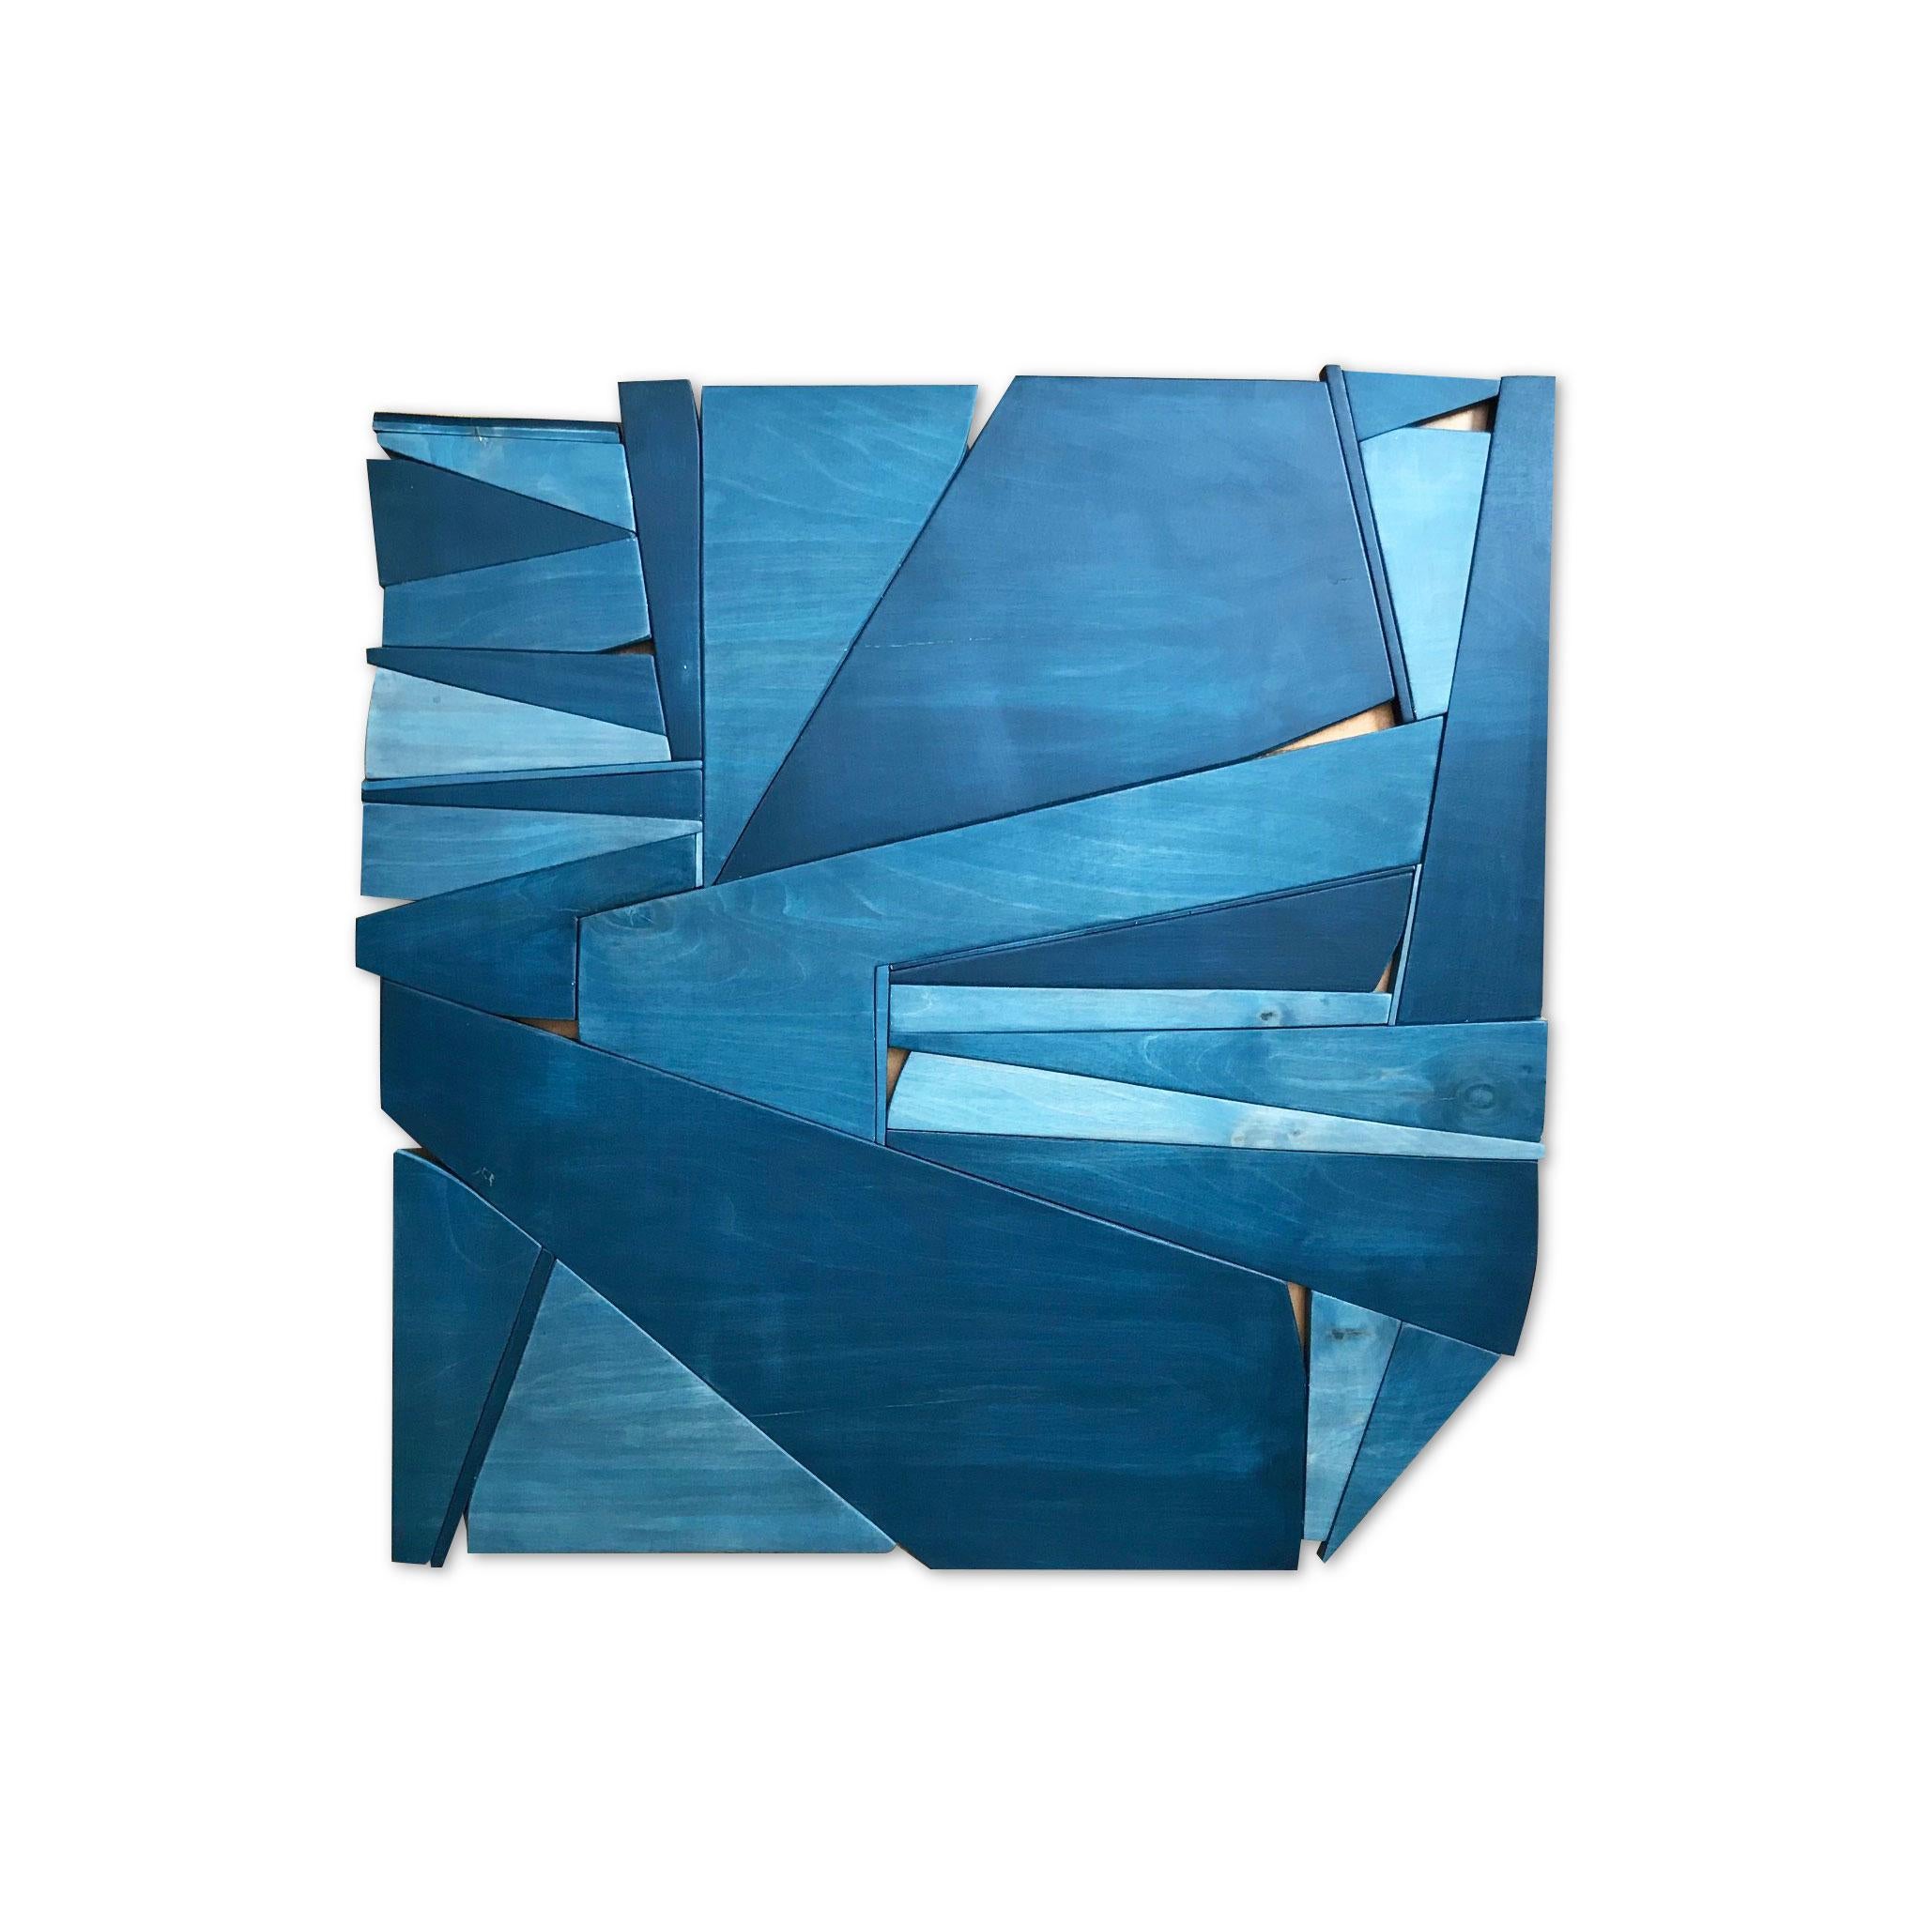 Sculpture murale en bois monochrome « Denim IV » - Bleu, indigo, bleu marine, cuivre, jean - Mixed Media Art de Scott Troxel